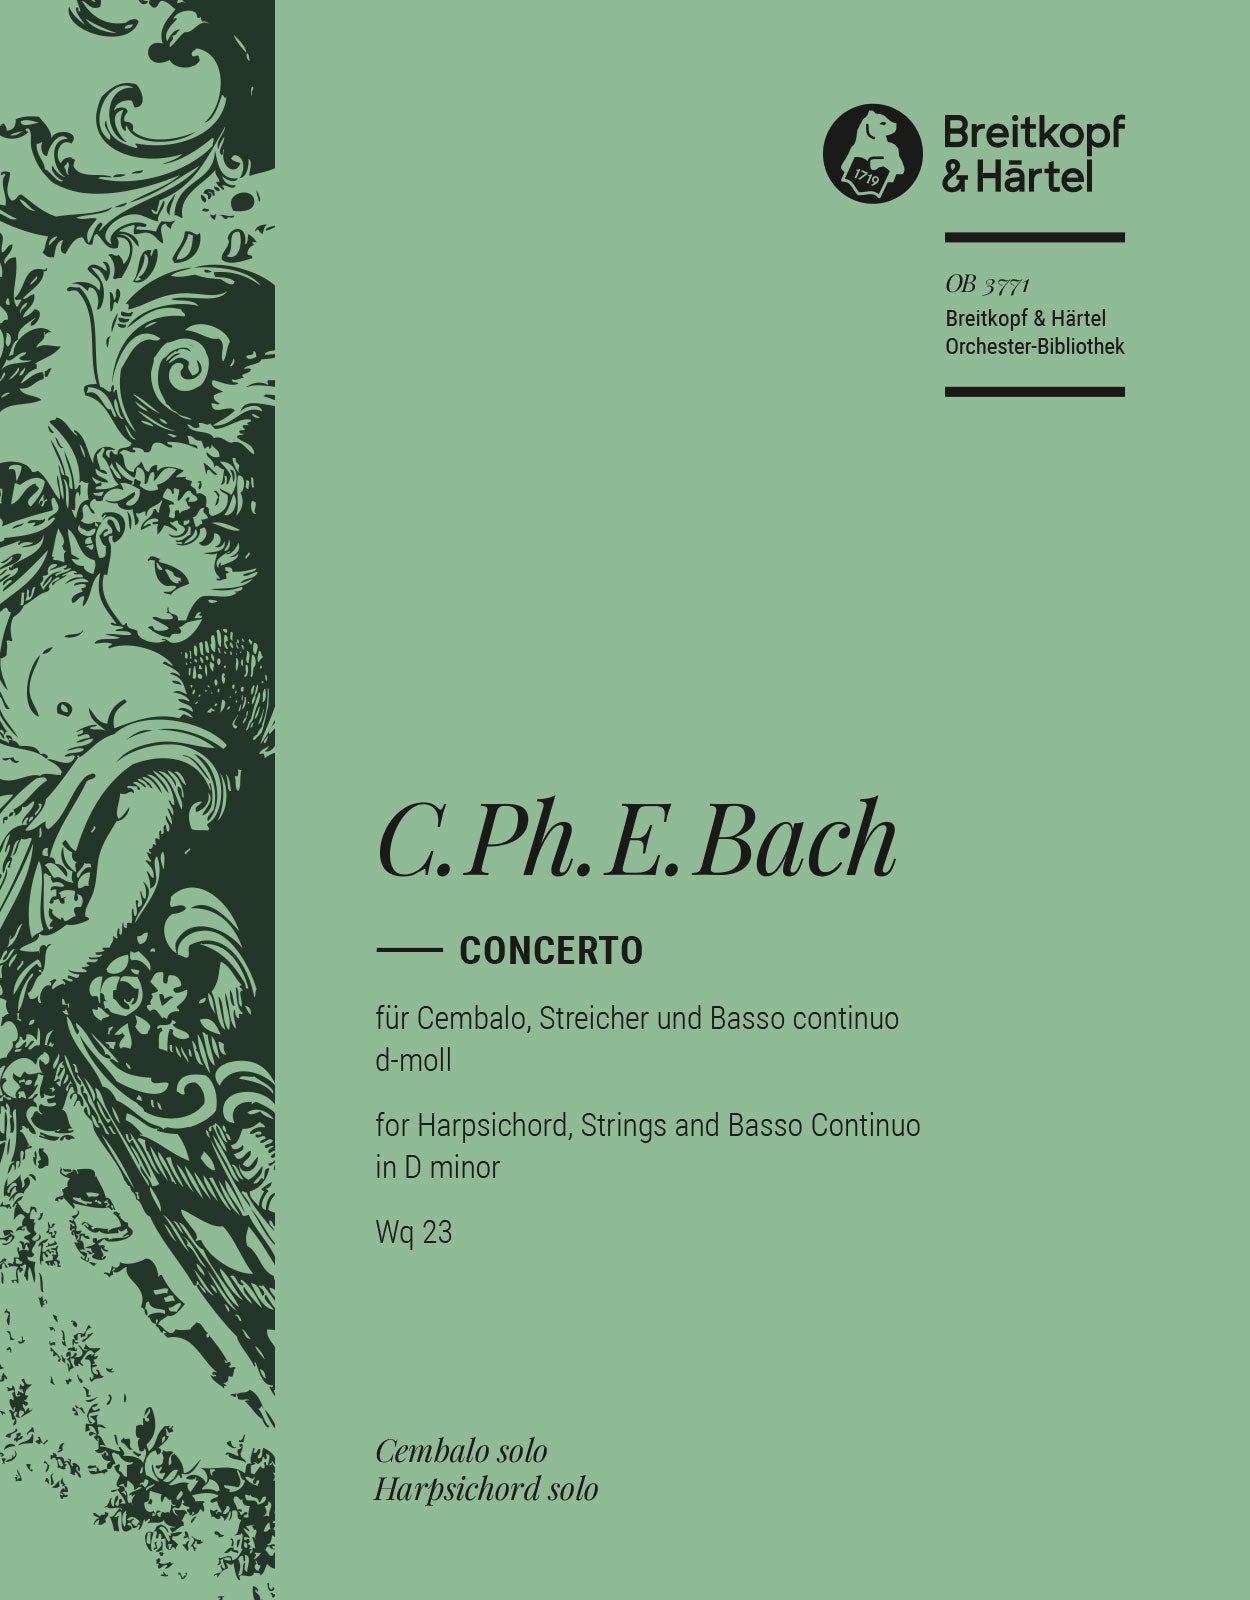 C.P.E. Bach: Harpsichord Concerto in D Minor, Wq. 23